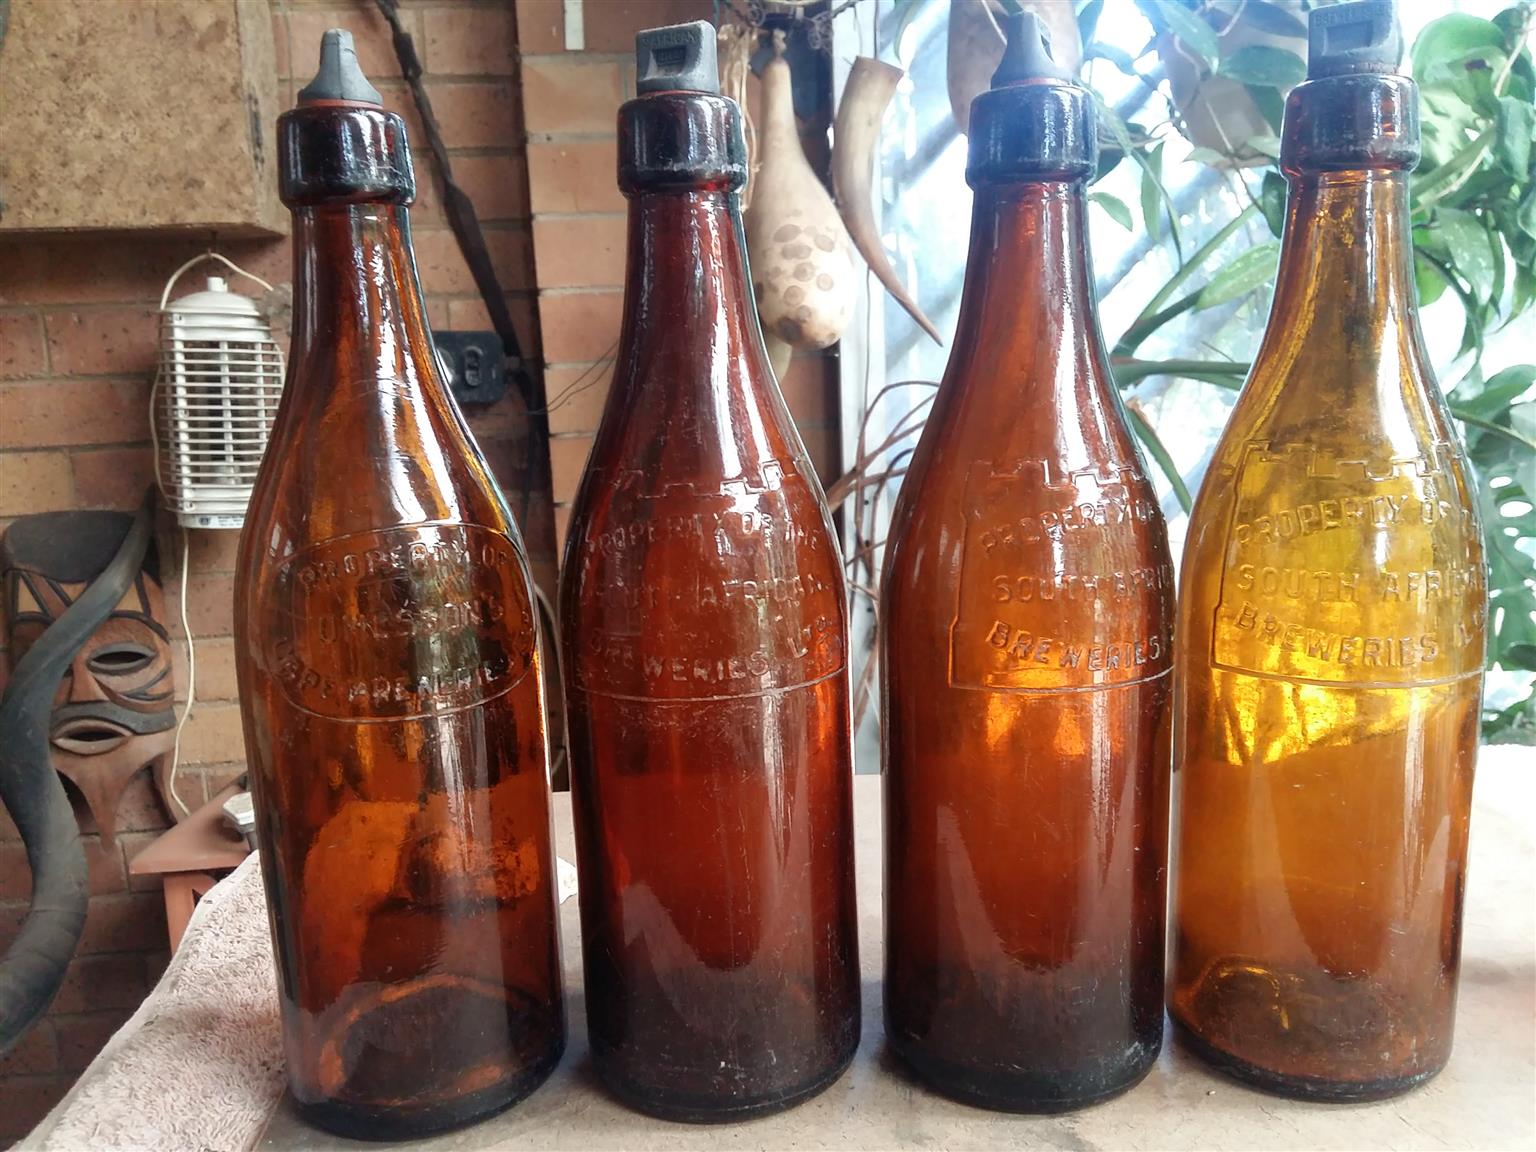 Old beer bottles